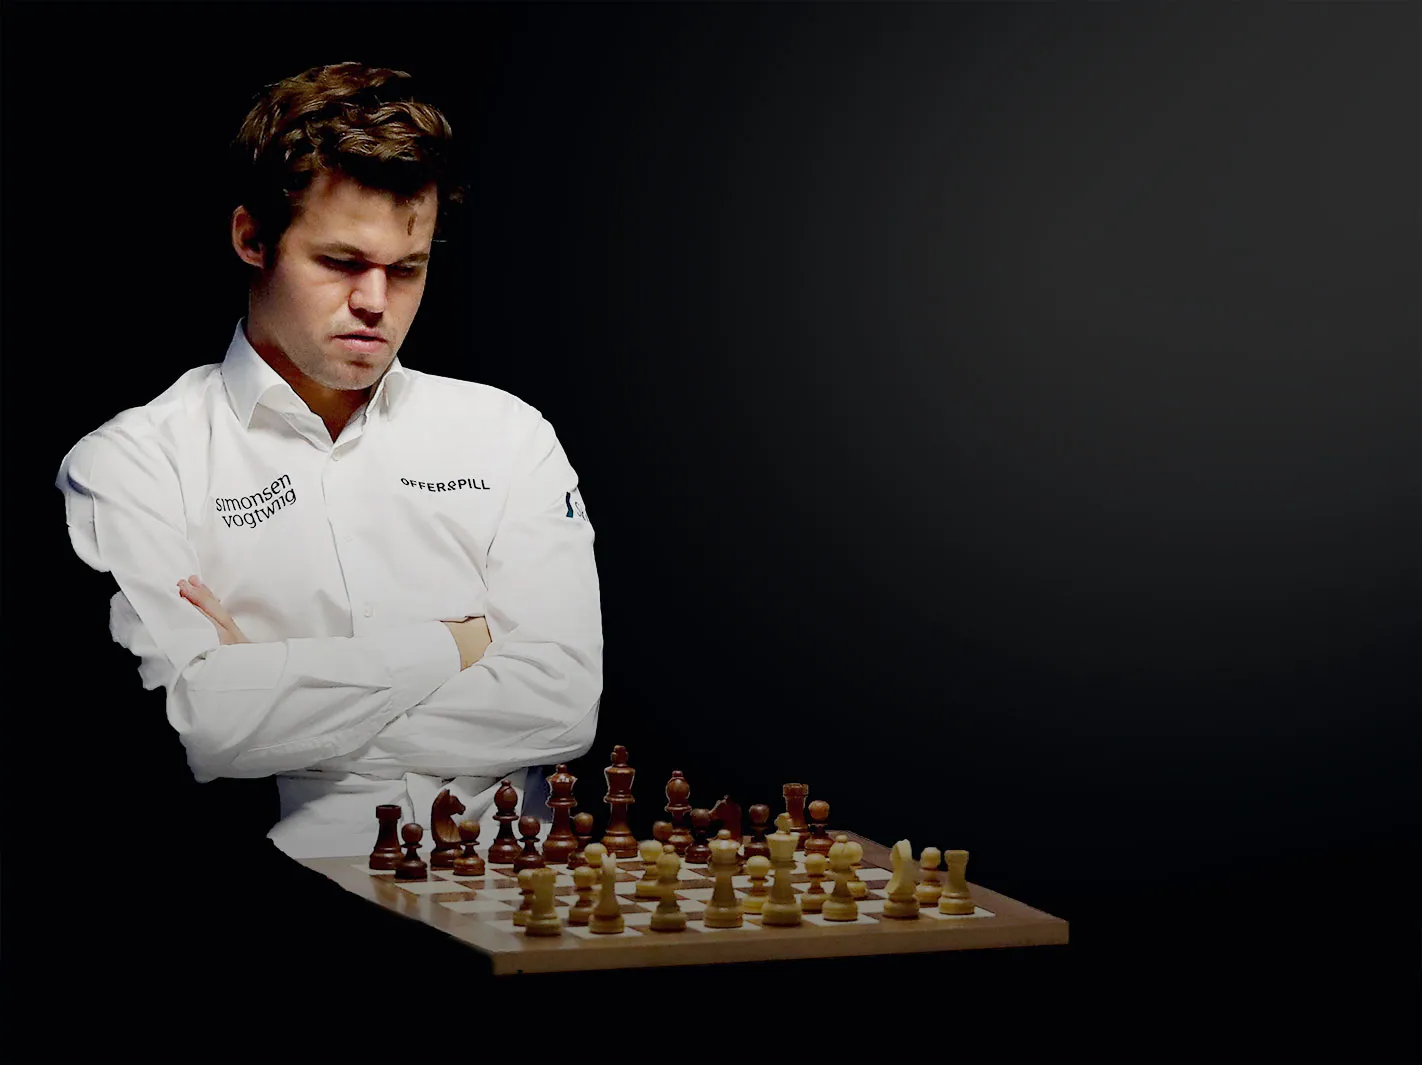 About GM Magnus Carlsen 🥇